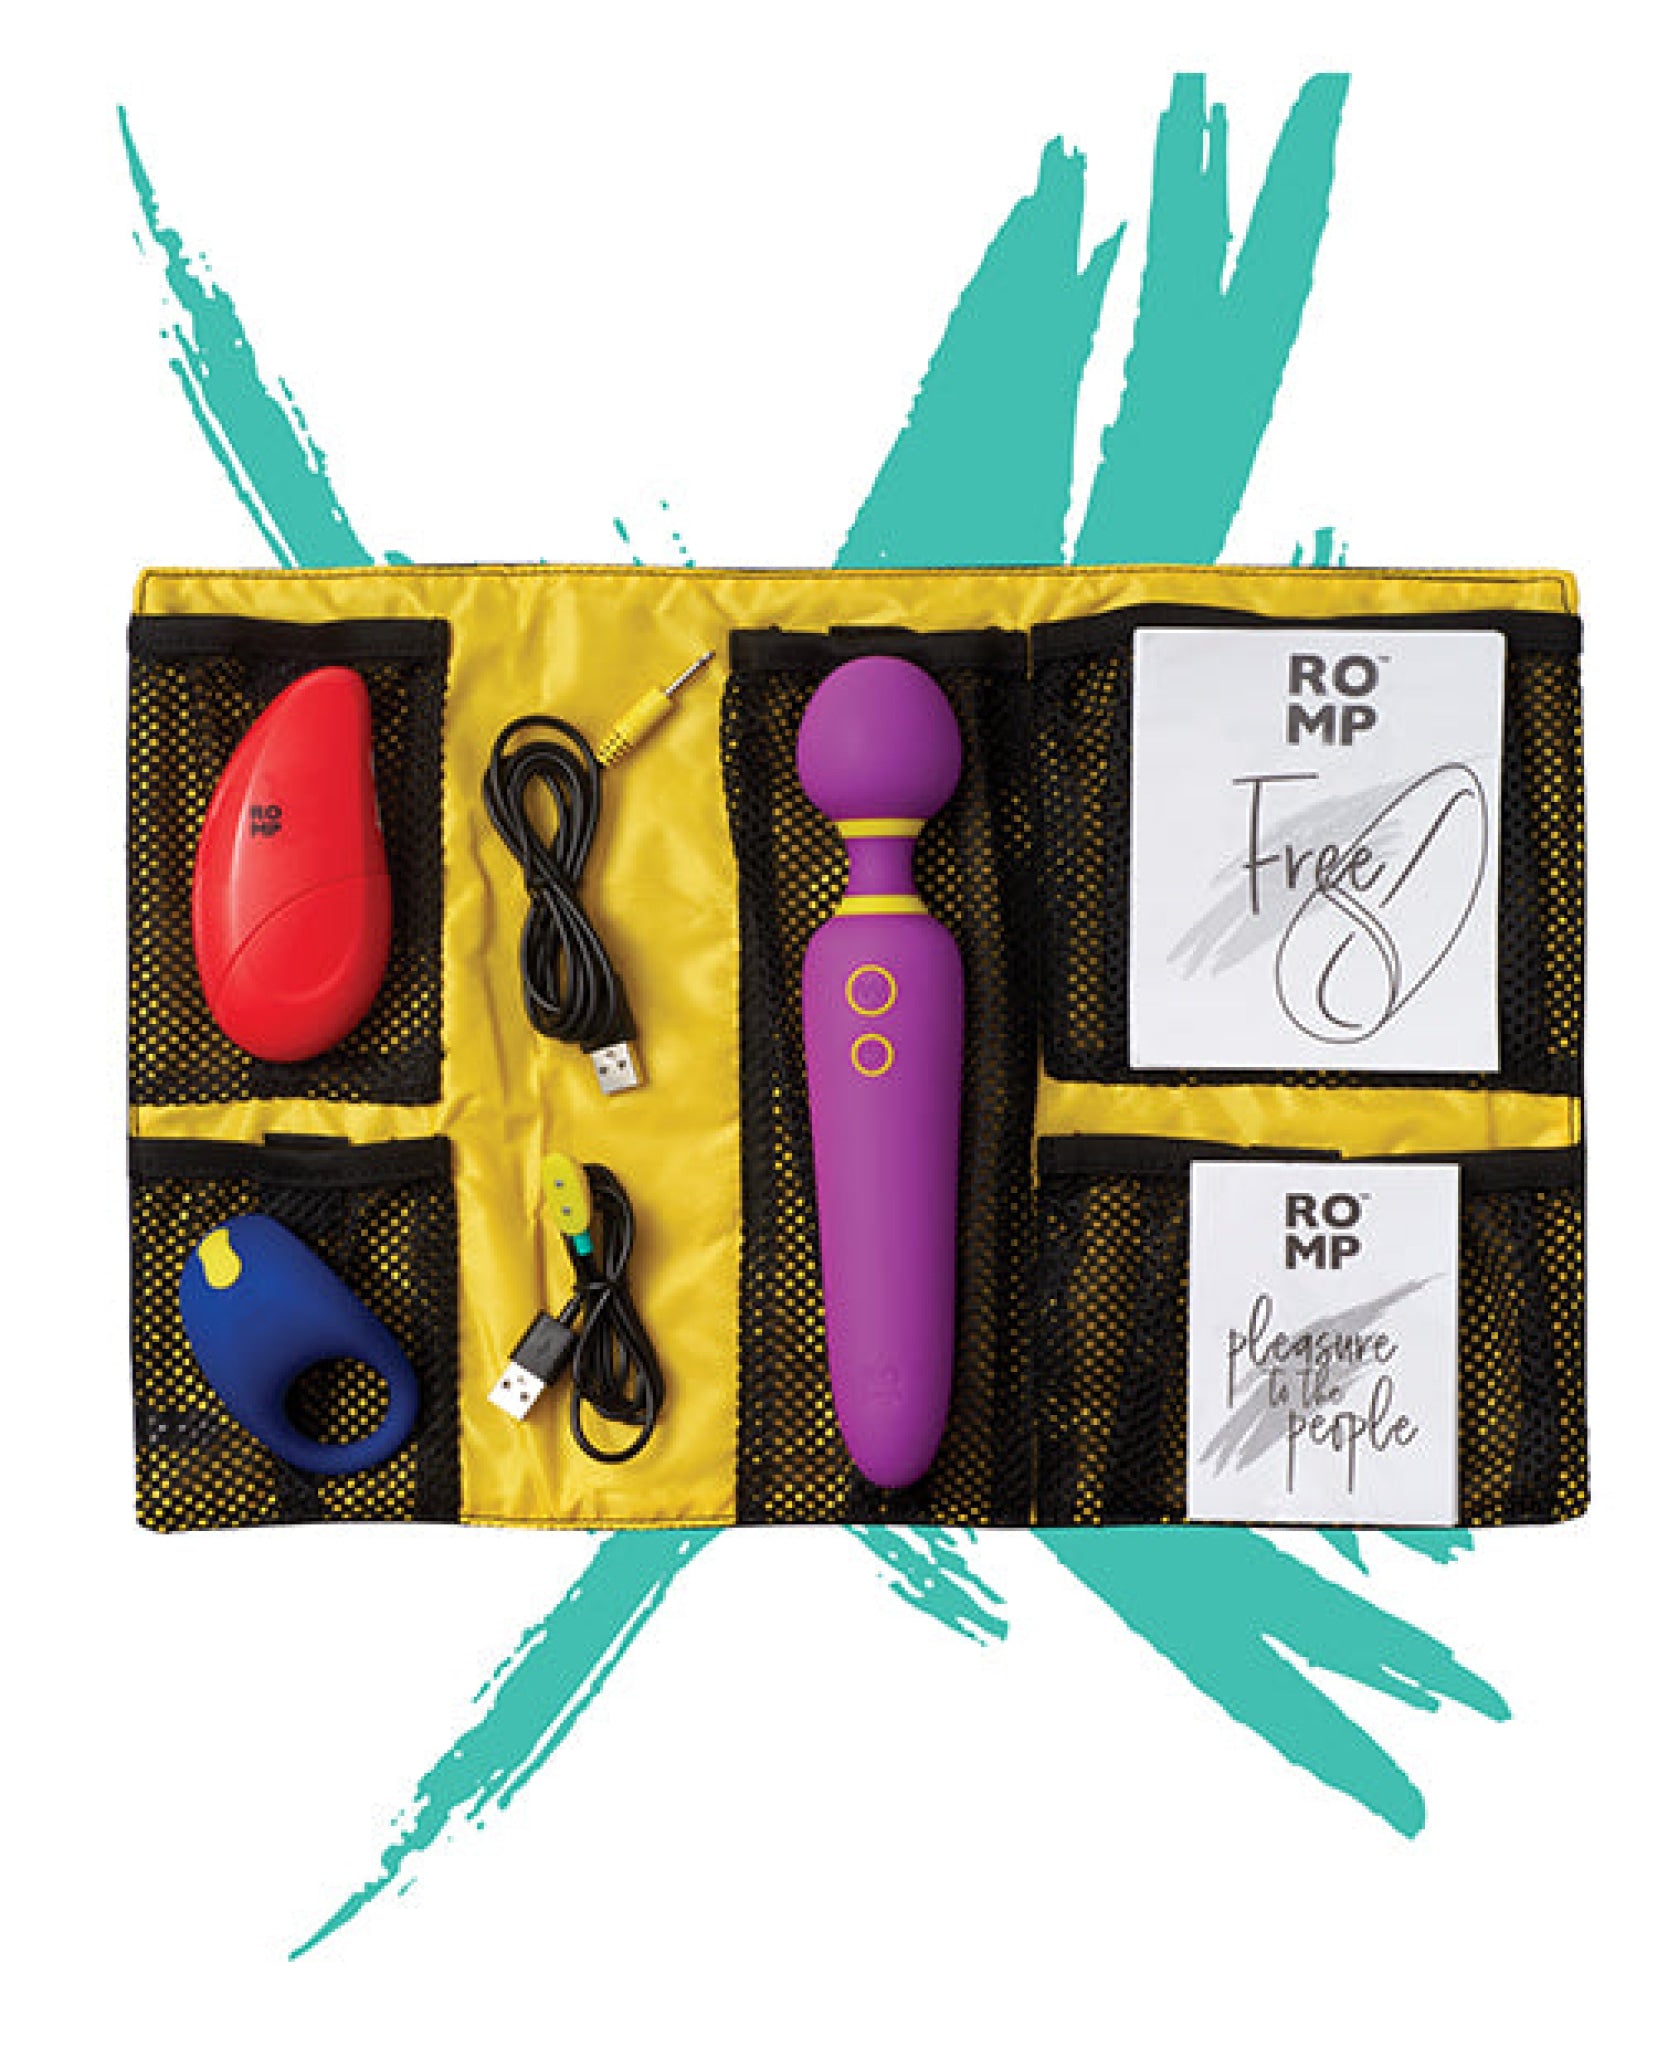 Romp Pleasure Kit - Flip, Free & Juke In Carrying Case Romp